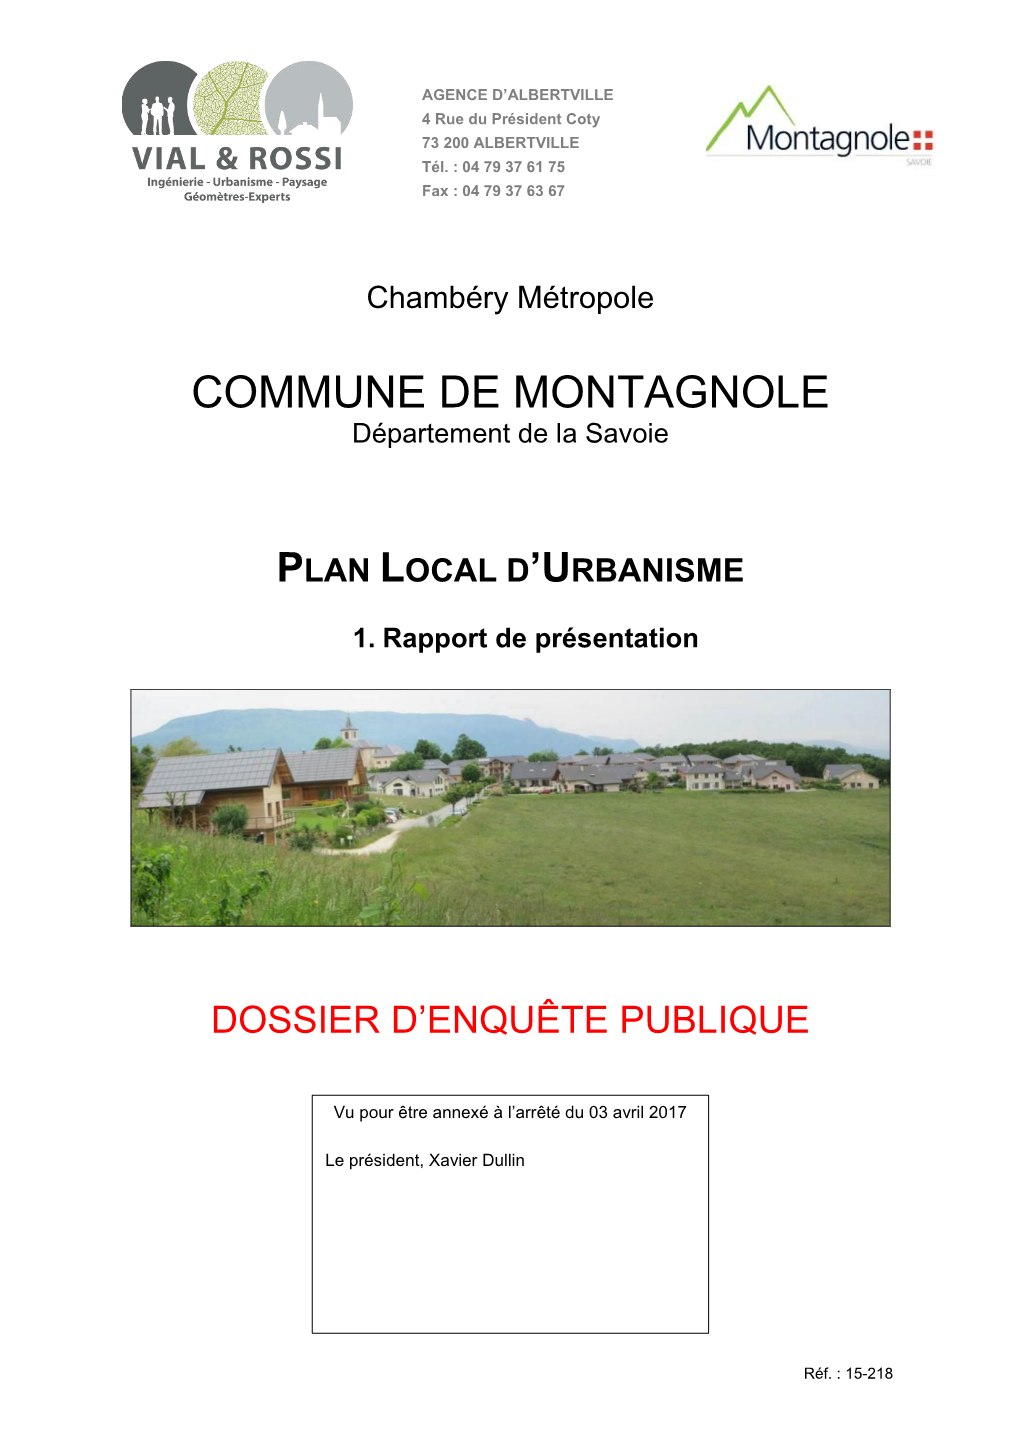 COMMUNE DE MONTAGNOLE Département De La Savoie